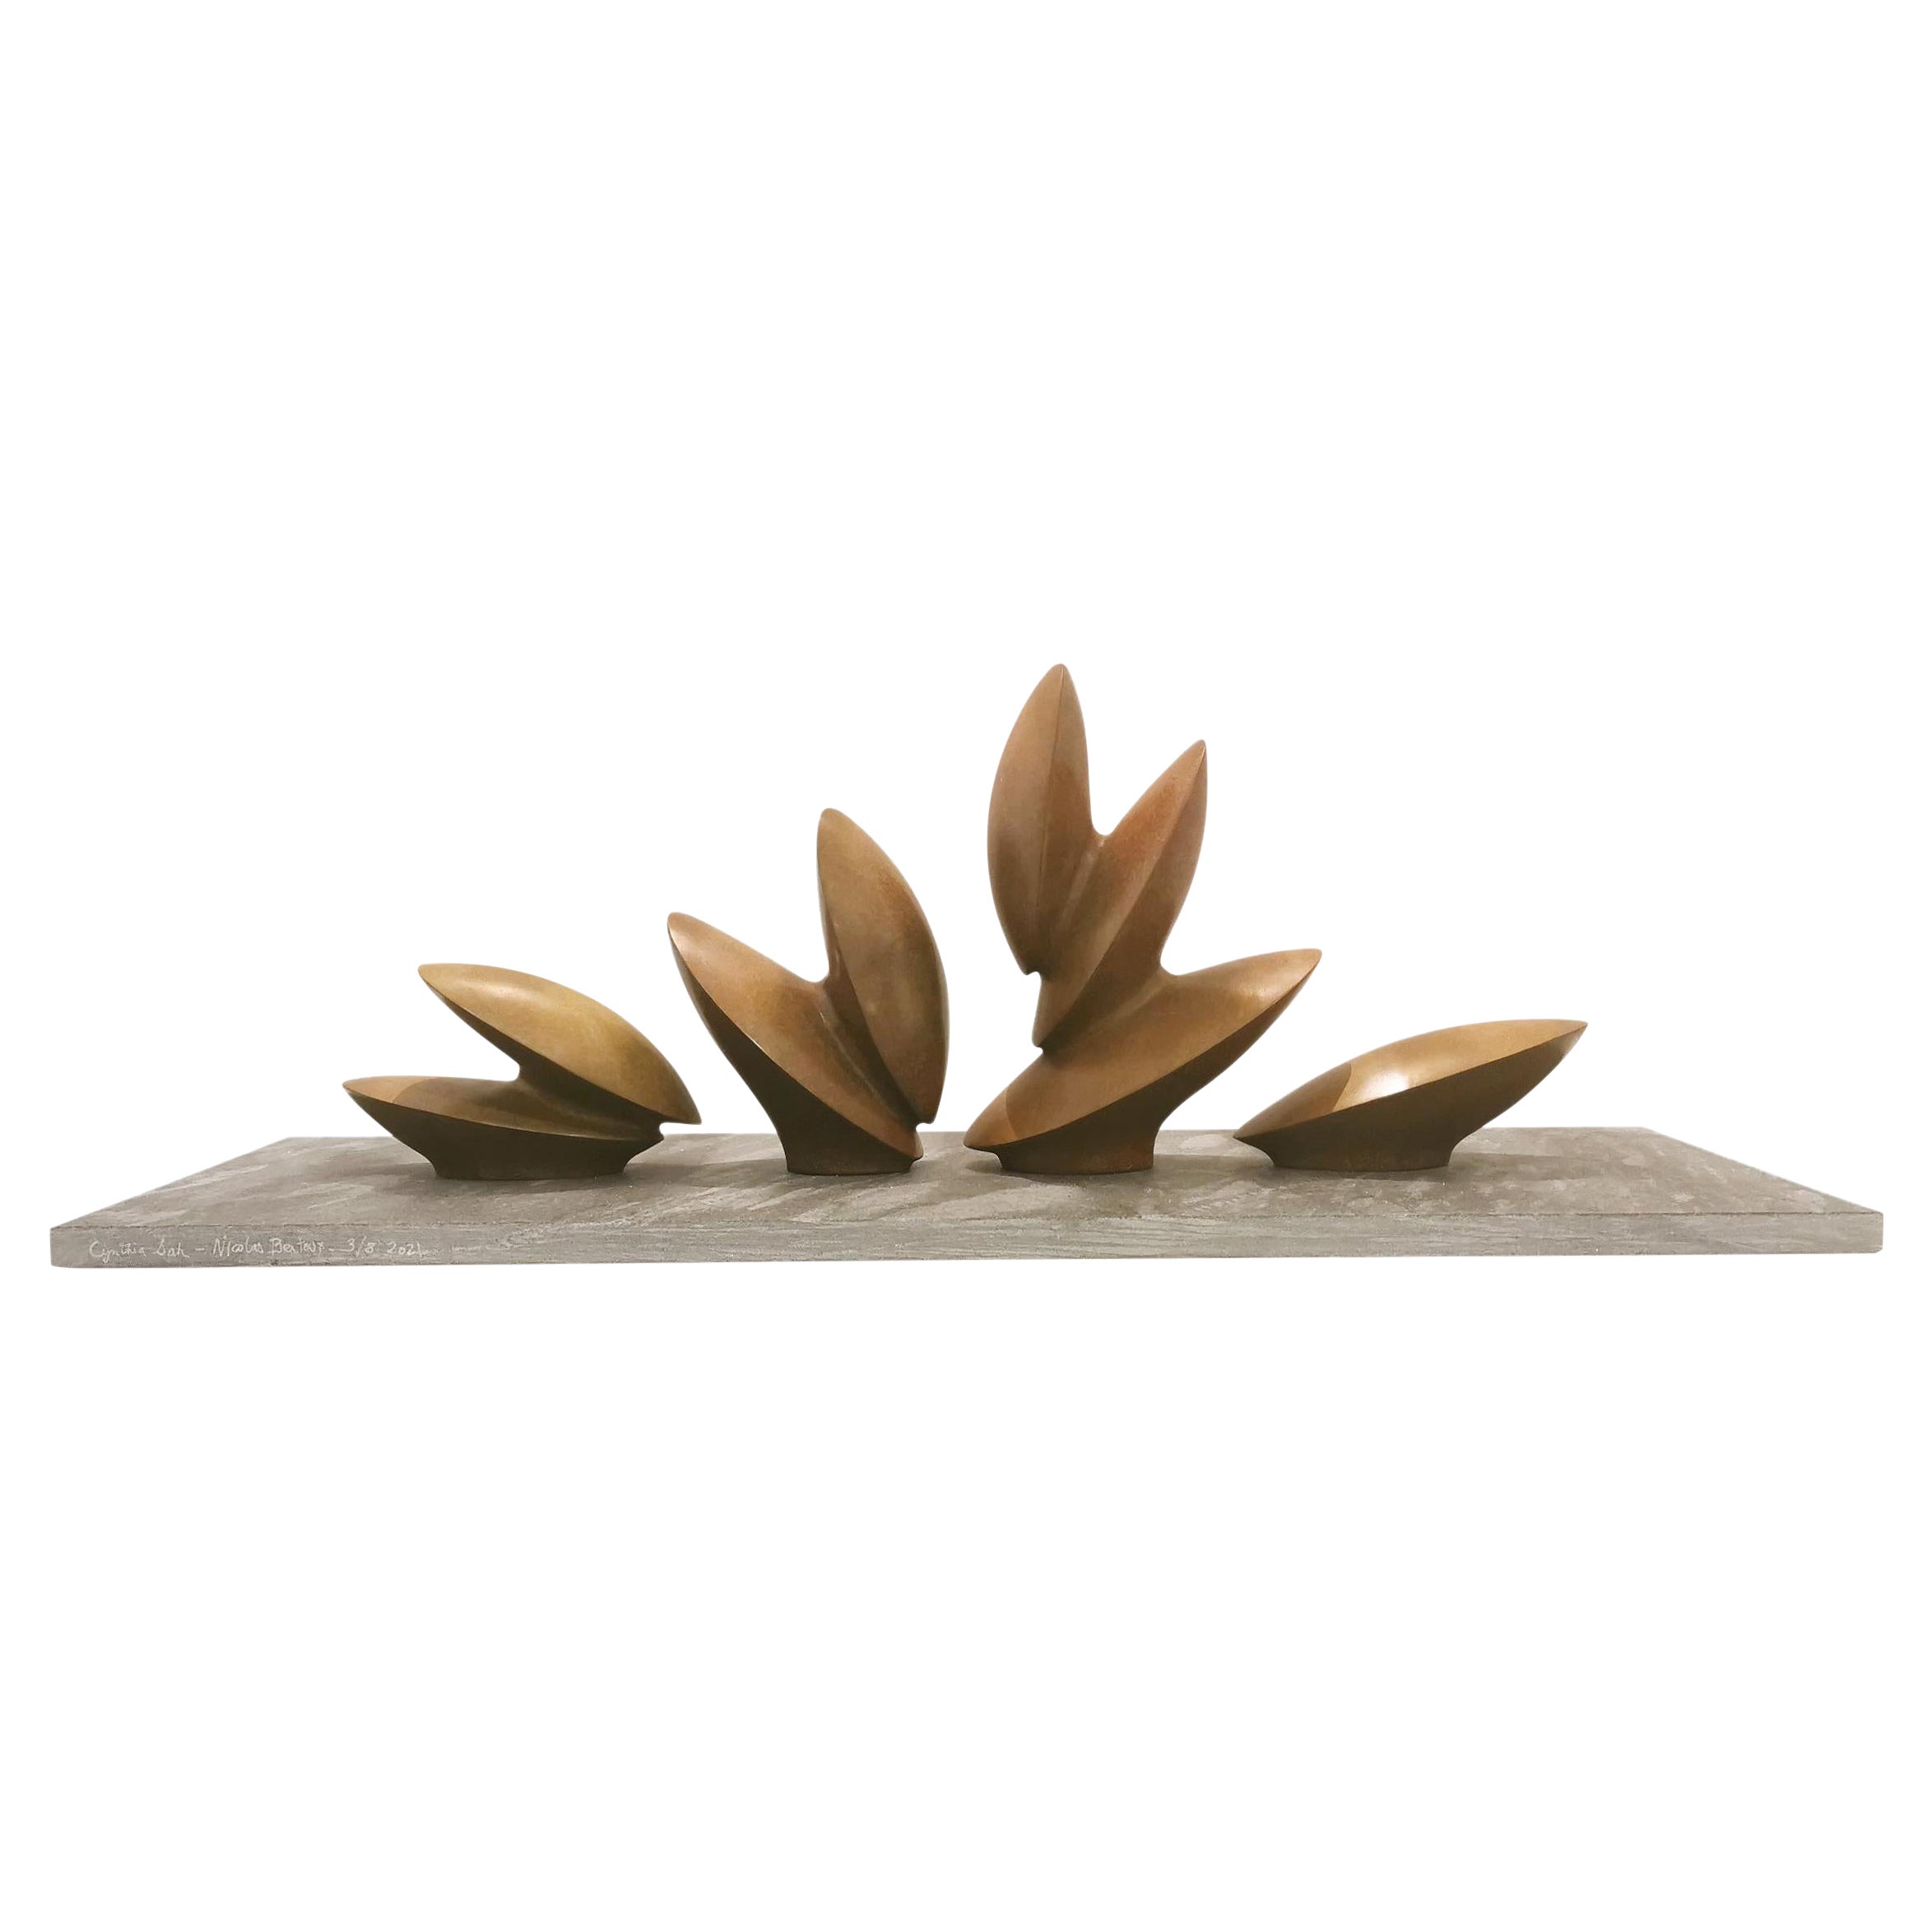 Sculpture abstraite du 21e siècle représentant des feuilles dansant par Nicolas Bertoux